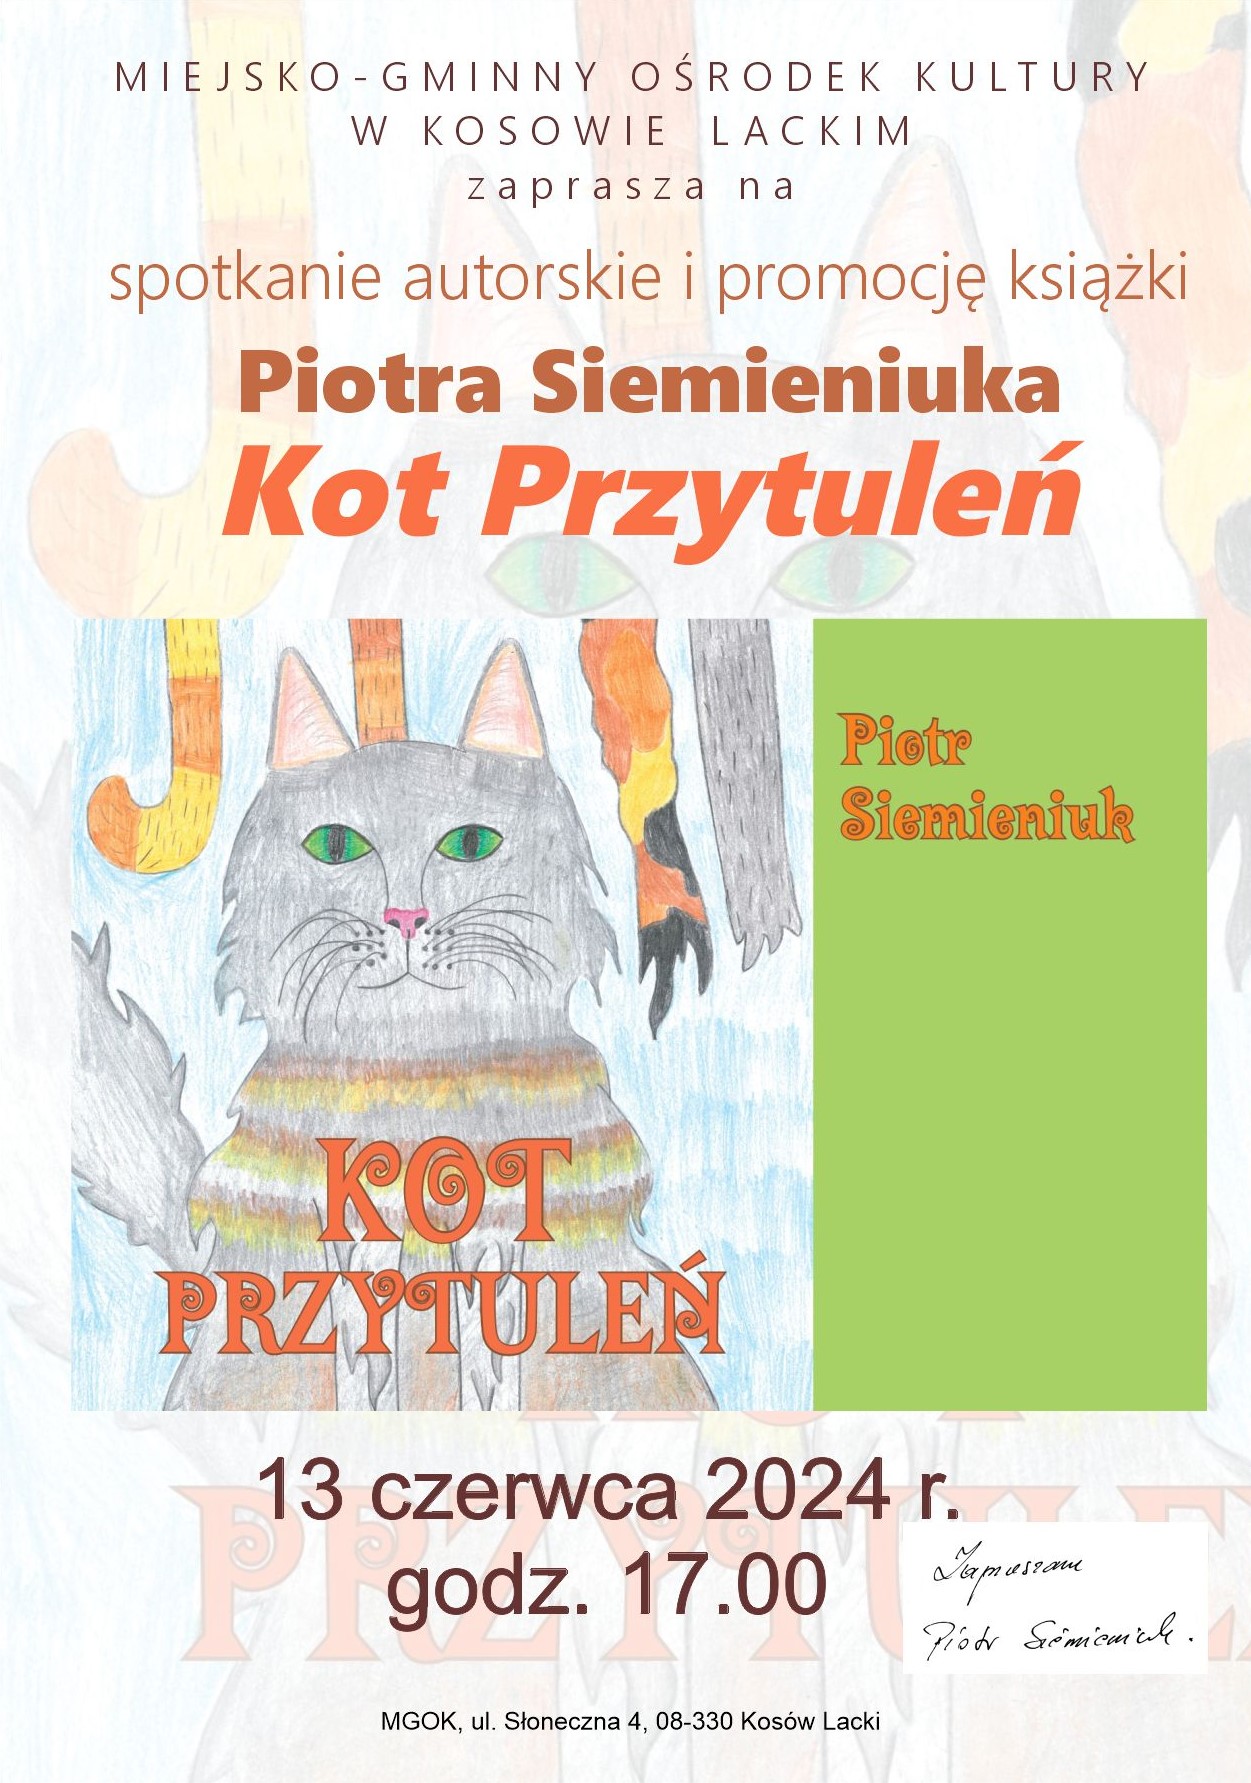 Promocja książki i spotkanie autorskie Piotra Siemieniuka "Kot Przytuleń" - plakat